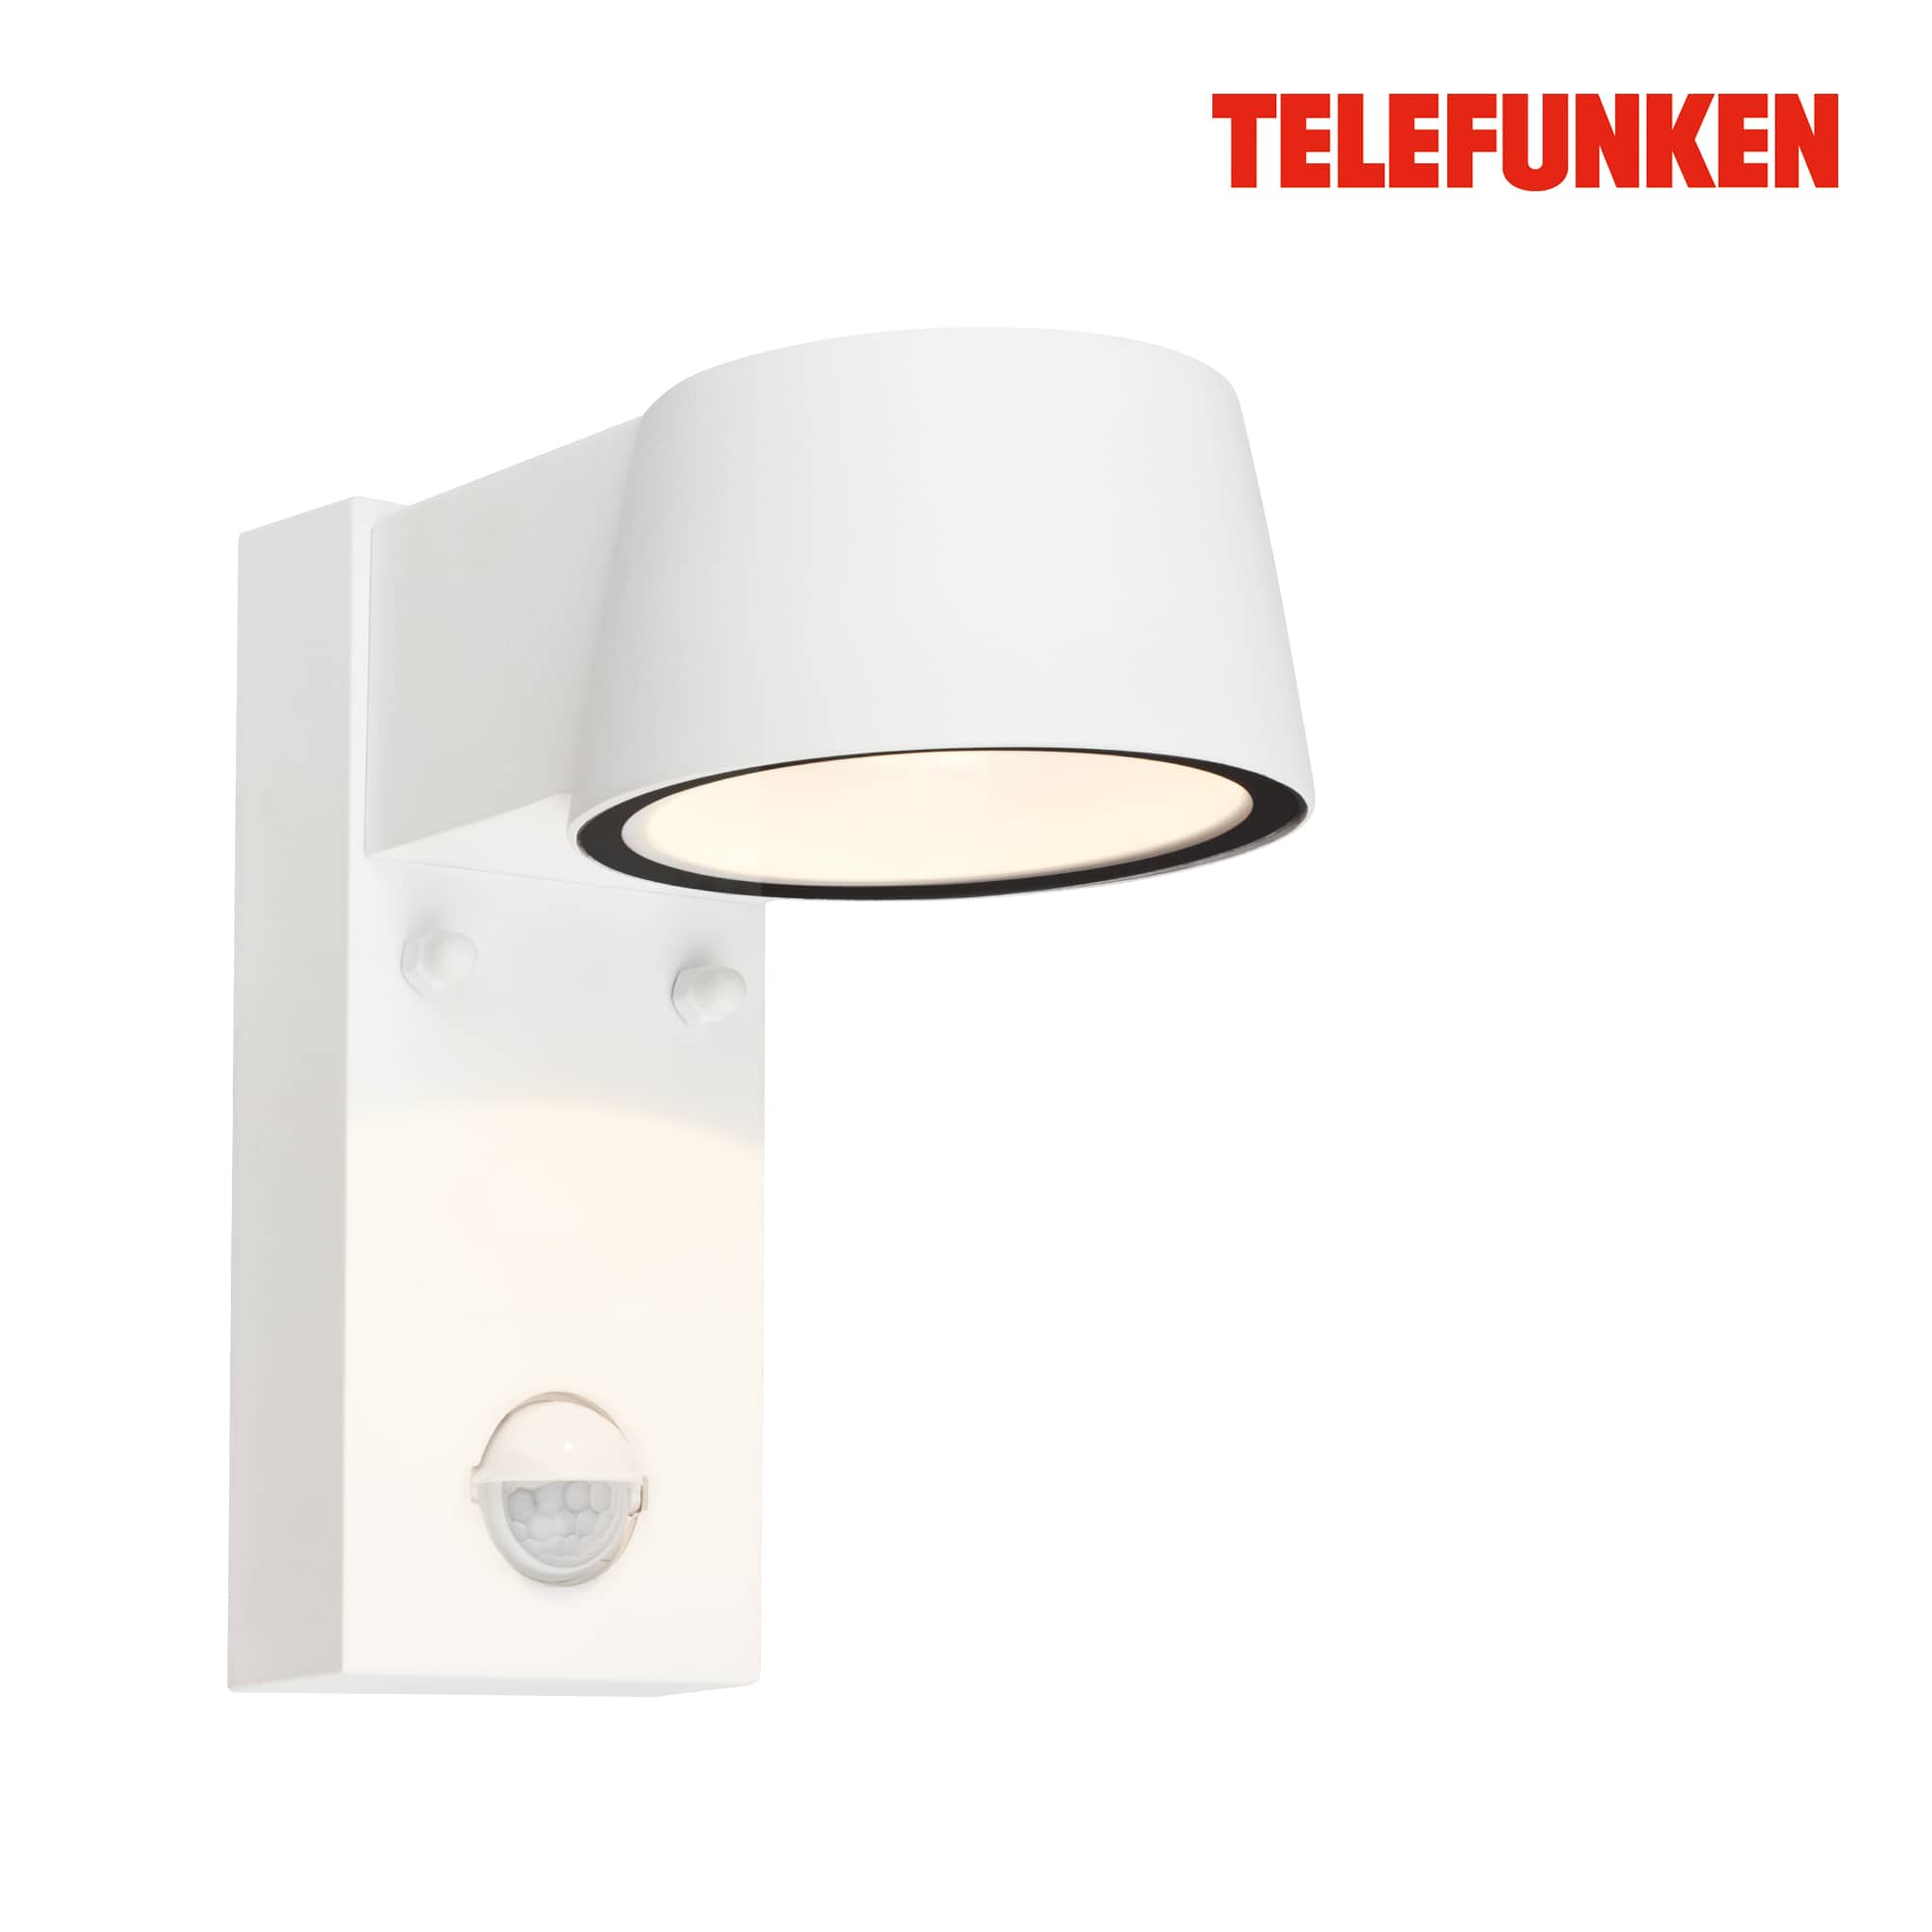 Lampada da parete Telefunken LED, rilevatore di movimento, sensore crepuscolare, bianco